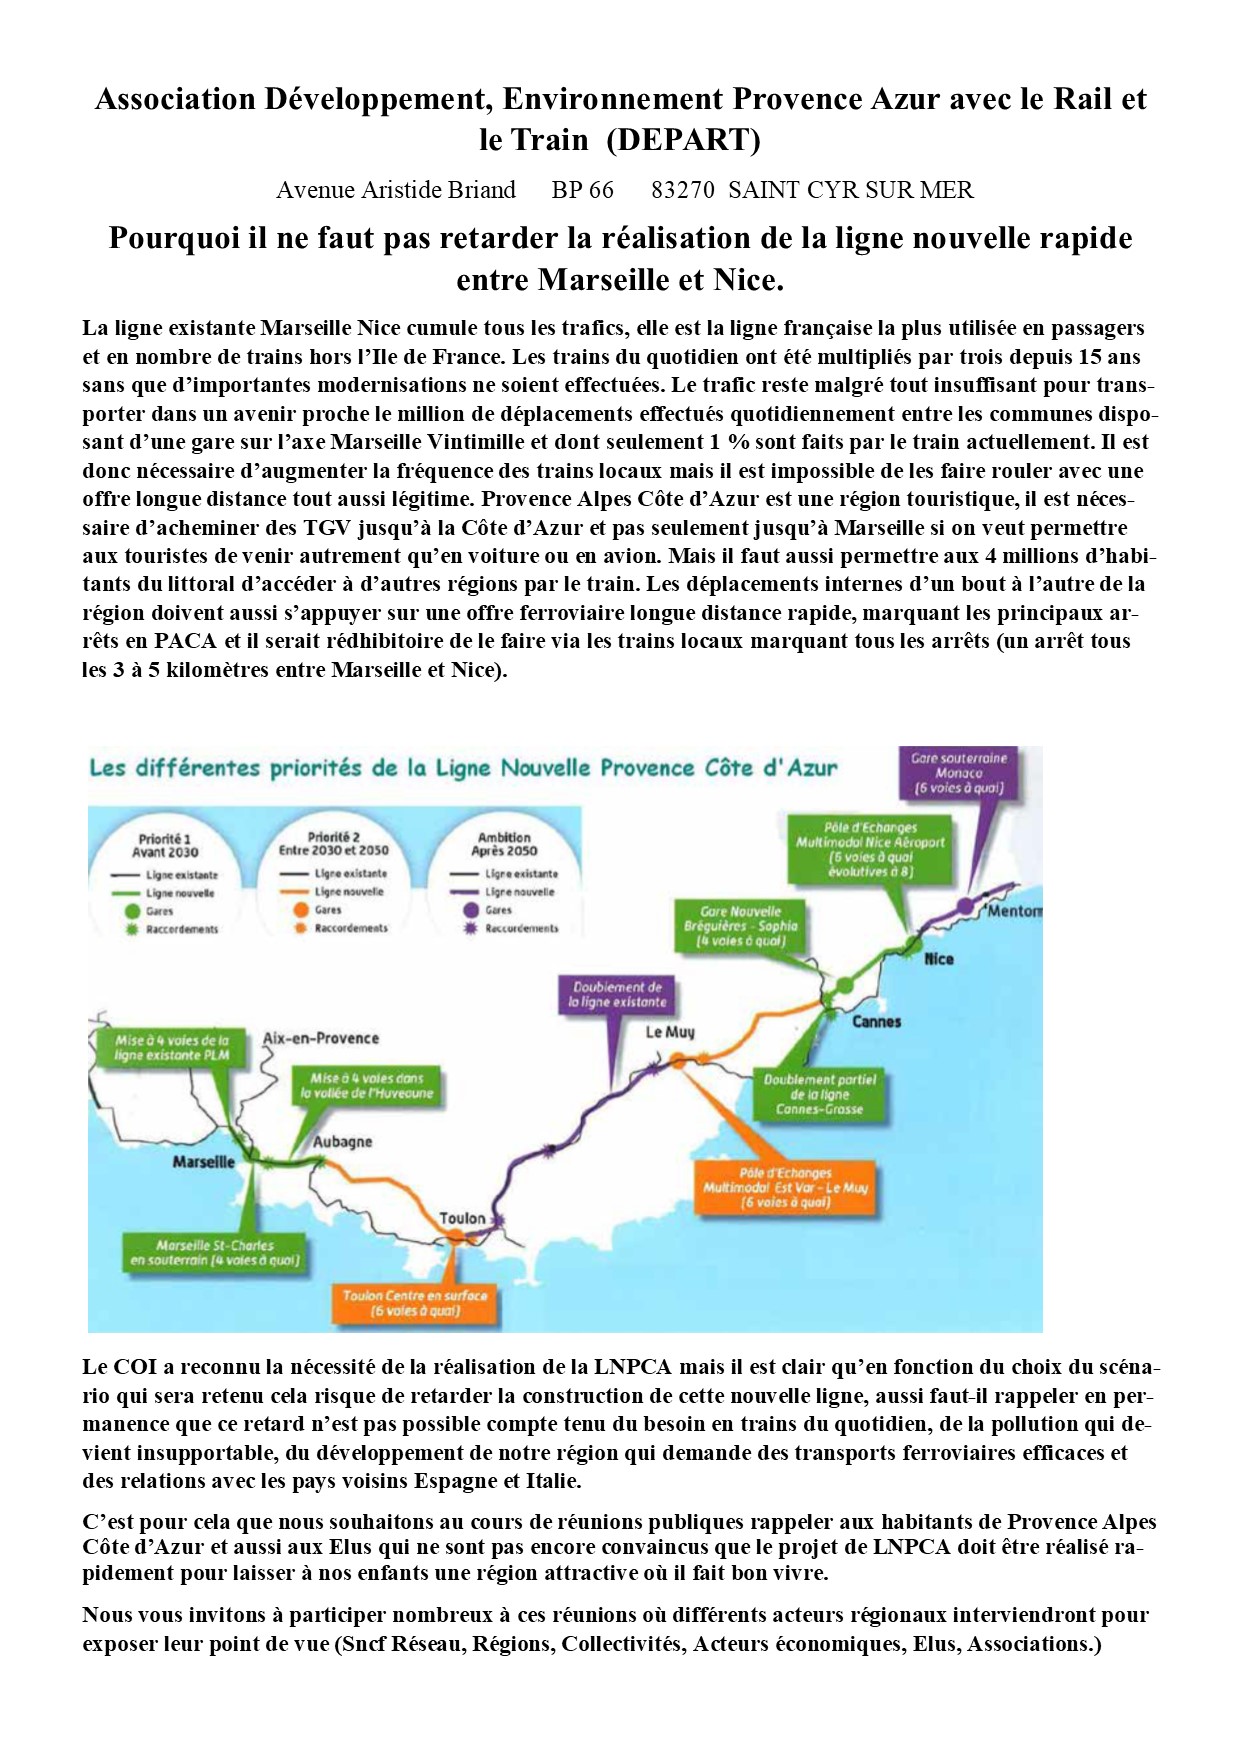 Pourquoi il ne faut pas retarder la réalisation de la ligne nouvelle rapide entre Marseille et Nice.